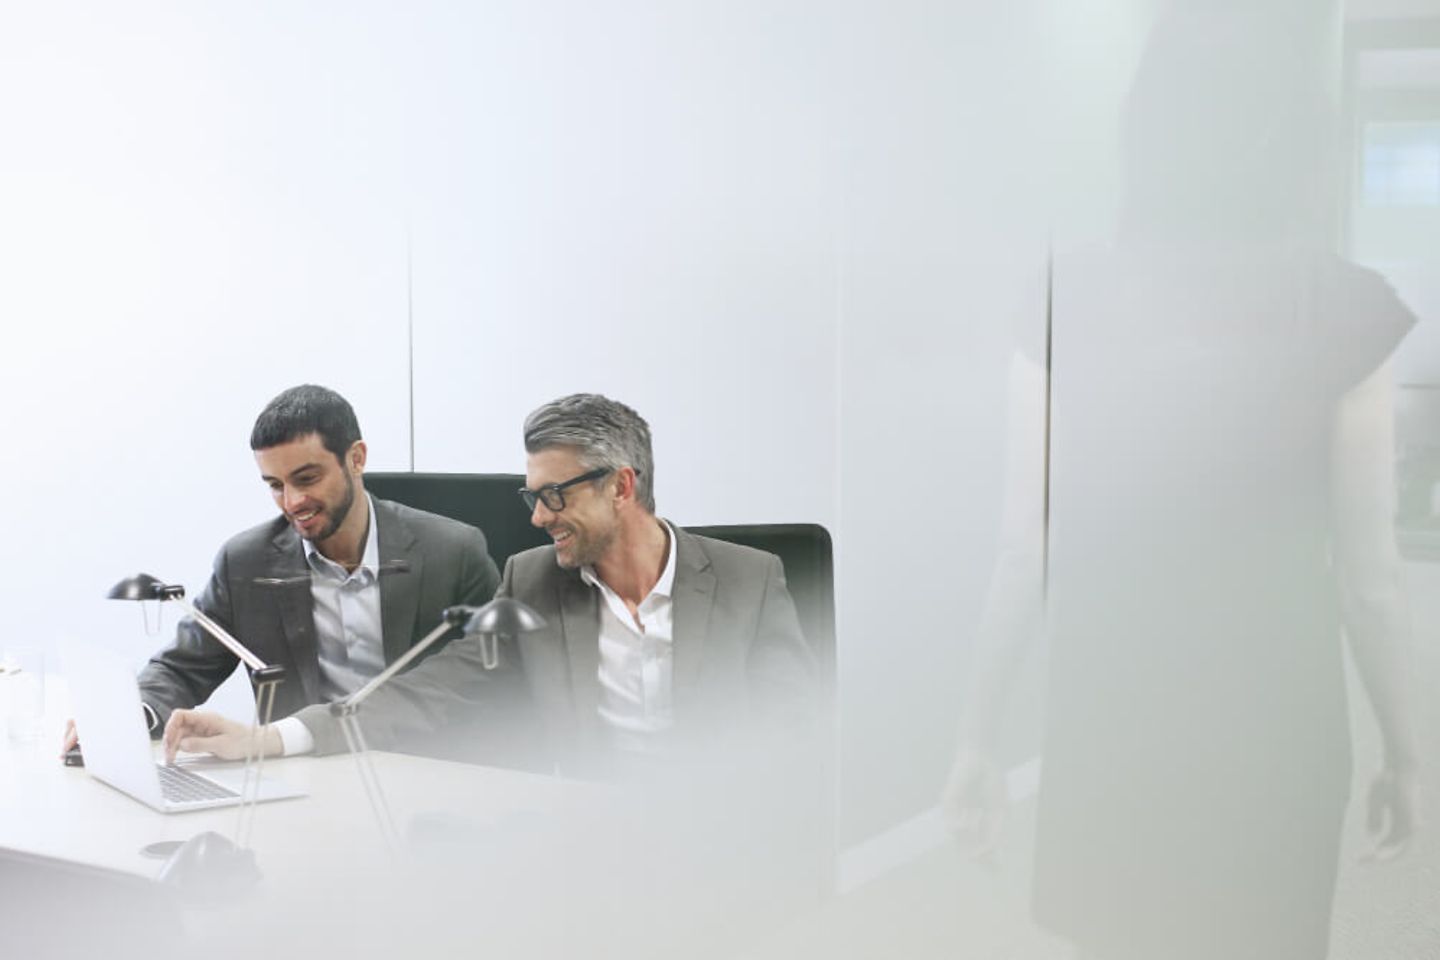 Zwei Männer im Anzug sitzen am Schreibtisch und lächeln